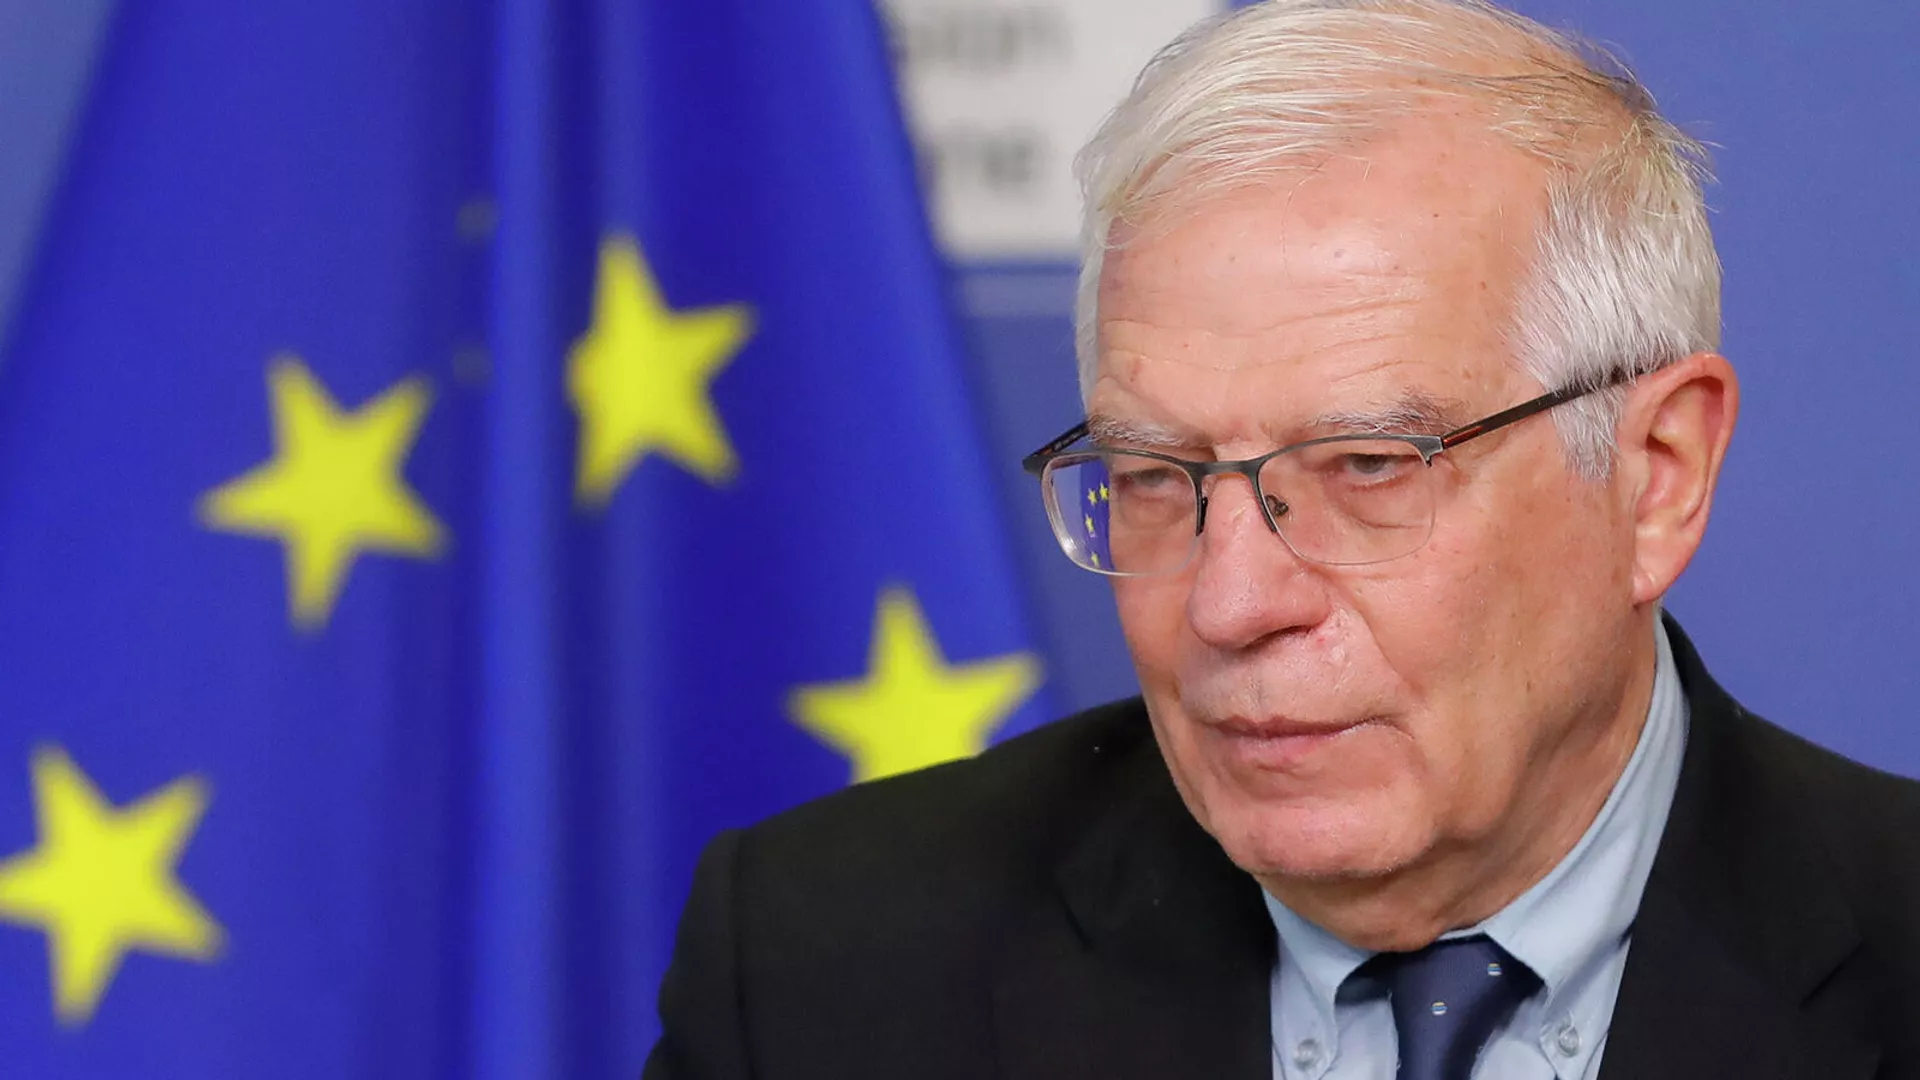 ЕС проведет внеочередную встречу министров иностранных дел в связи с ситуацией в Израиле